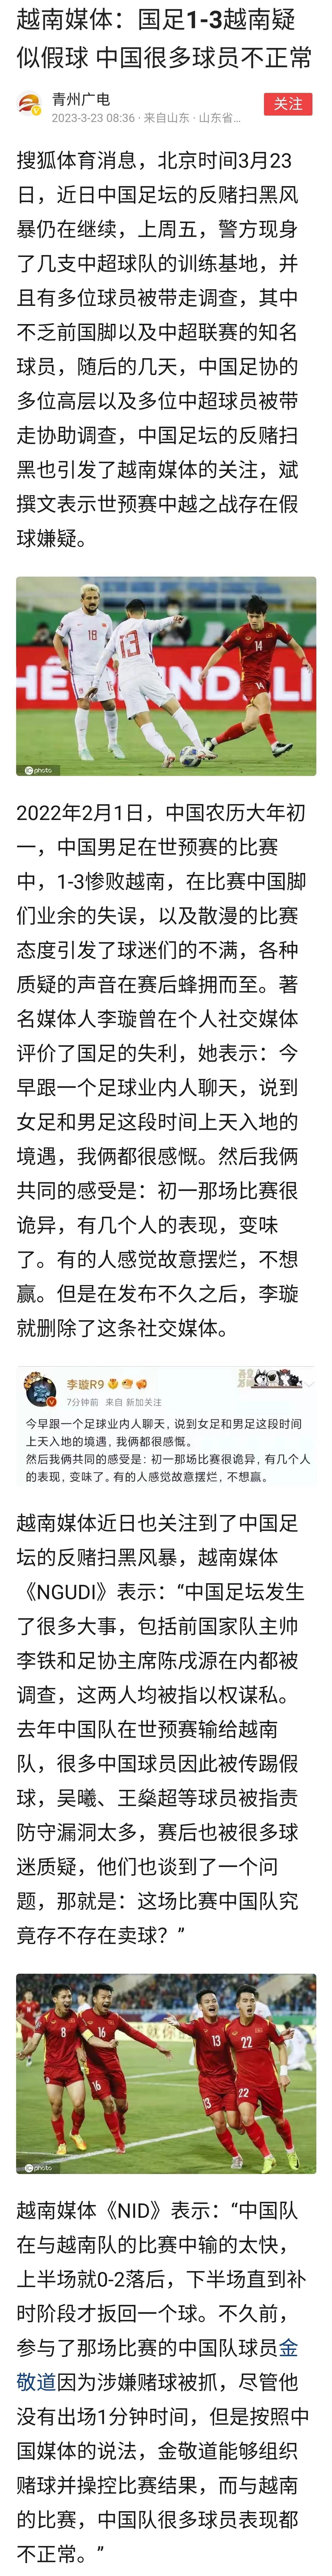 越南媒体：中国男足1:3负越南疑似假球

如果这场是假球，要求把犯事的队员重判，(1)